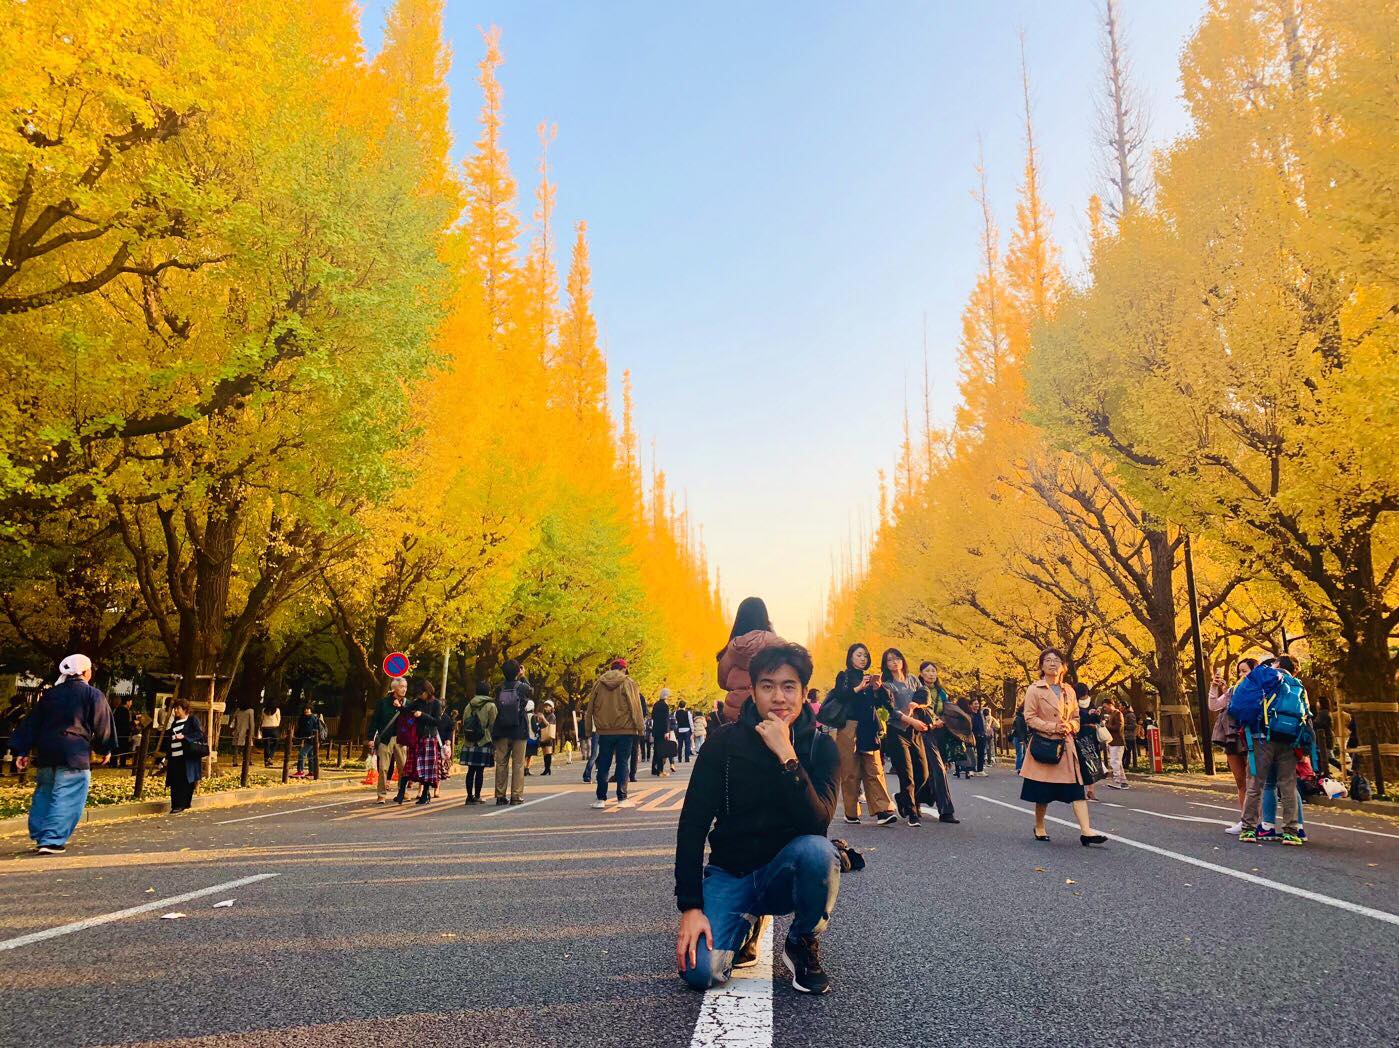 Khám phá vẻ đẹp tuyệt vời của Nhật Bản vào mùa thu với những cây lá tuyệt đẹp, rực rỡ, mang đến một khung cảnh thanh bình và lãng mạn. Hãy để những cảnh quan nhiên liệu tâm trí của bạn và tạo cho bạn cảm giác bình yên và thảnh thơi.